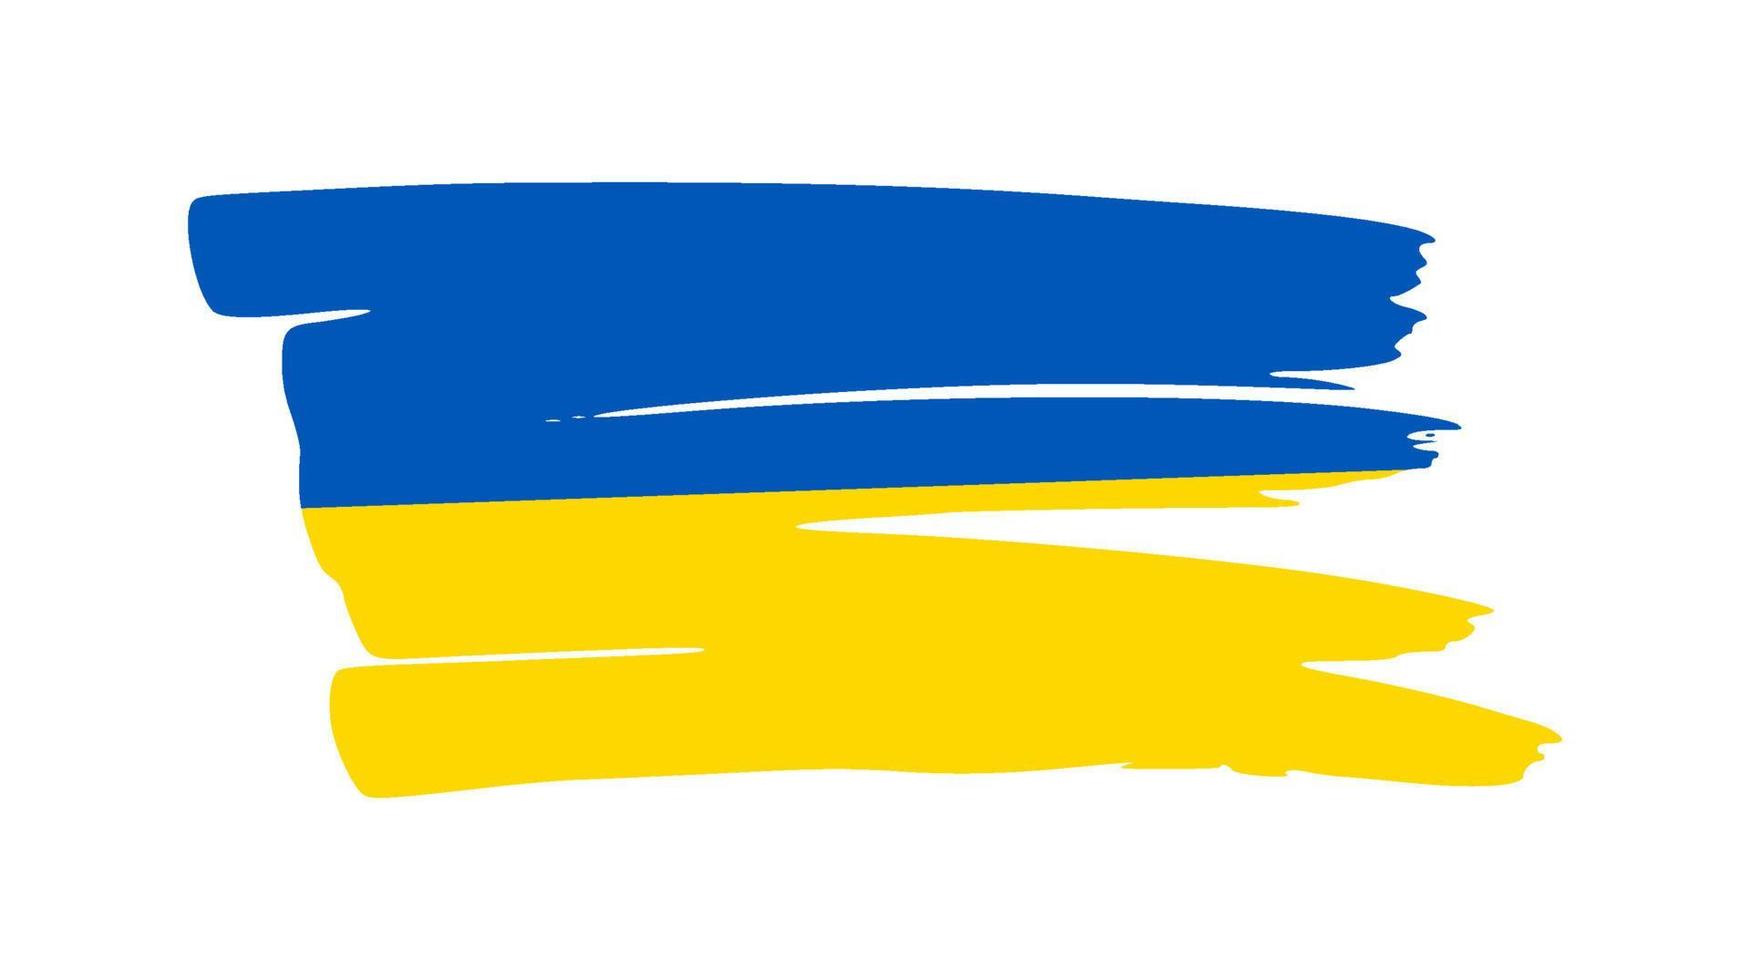 ucraino nazionale bandiera nel grunge stile vettore